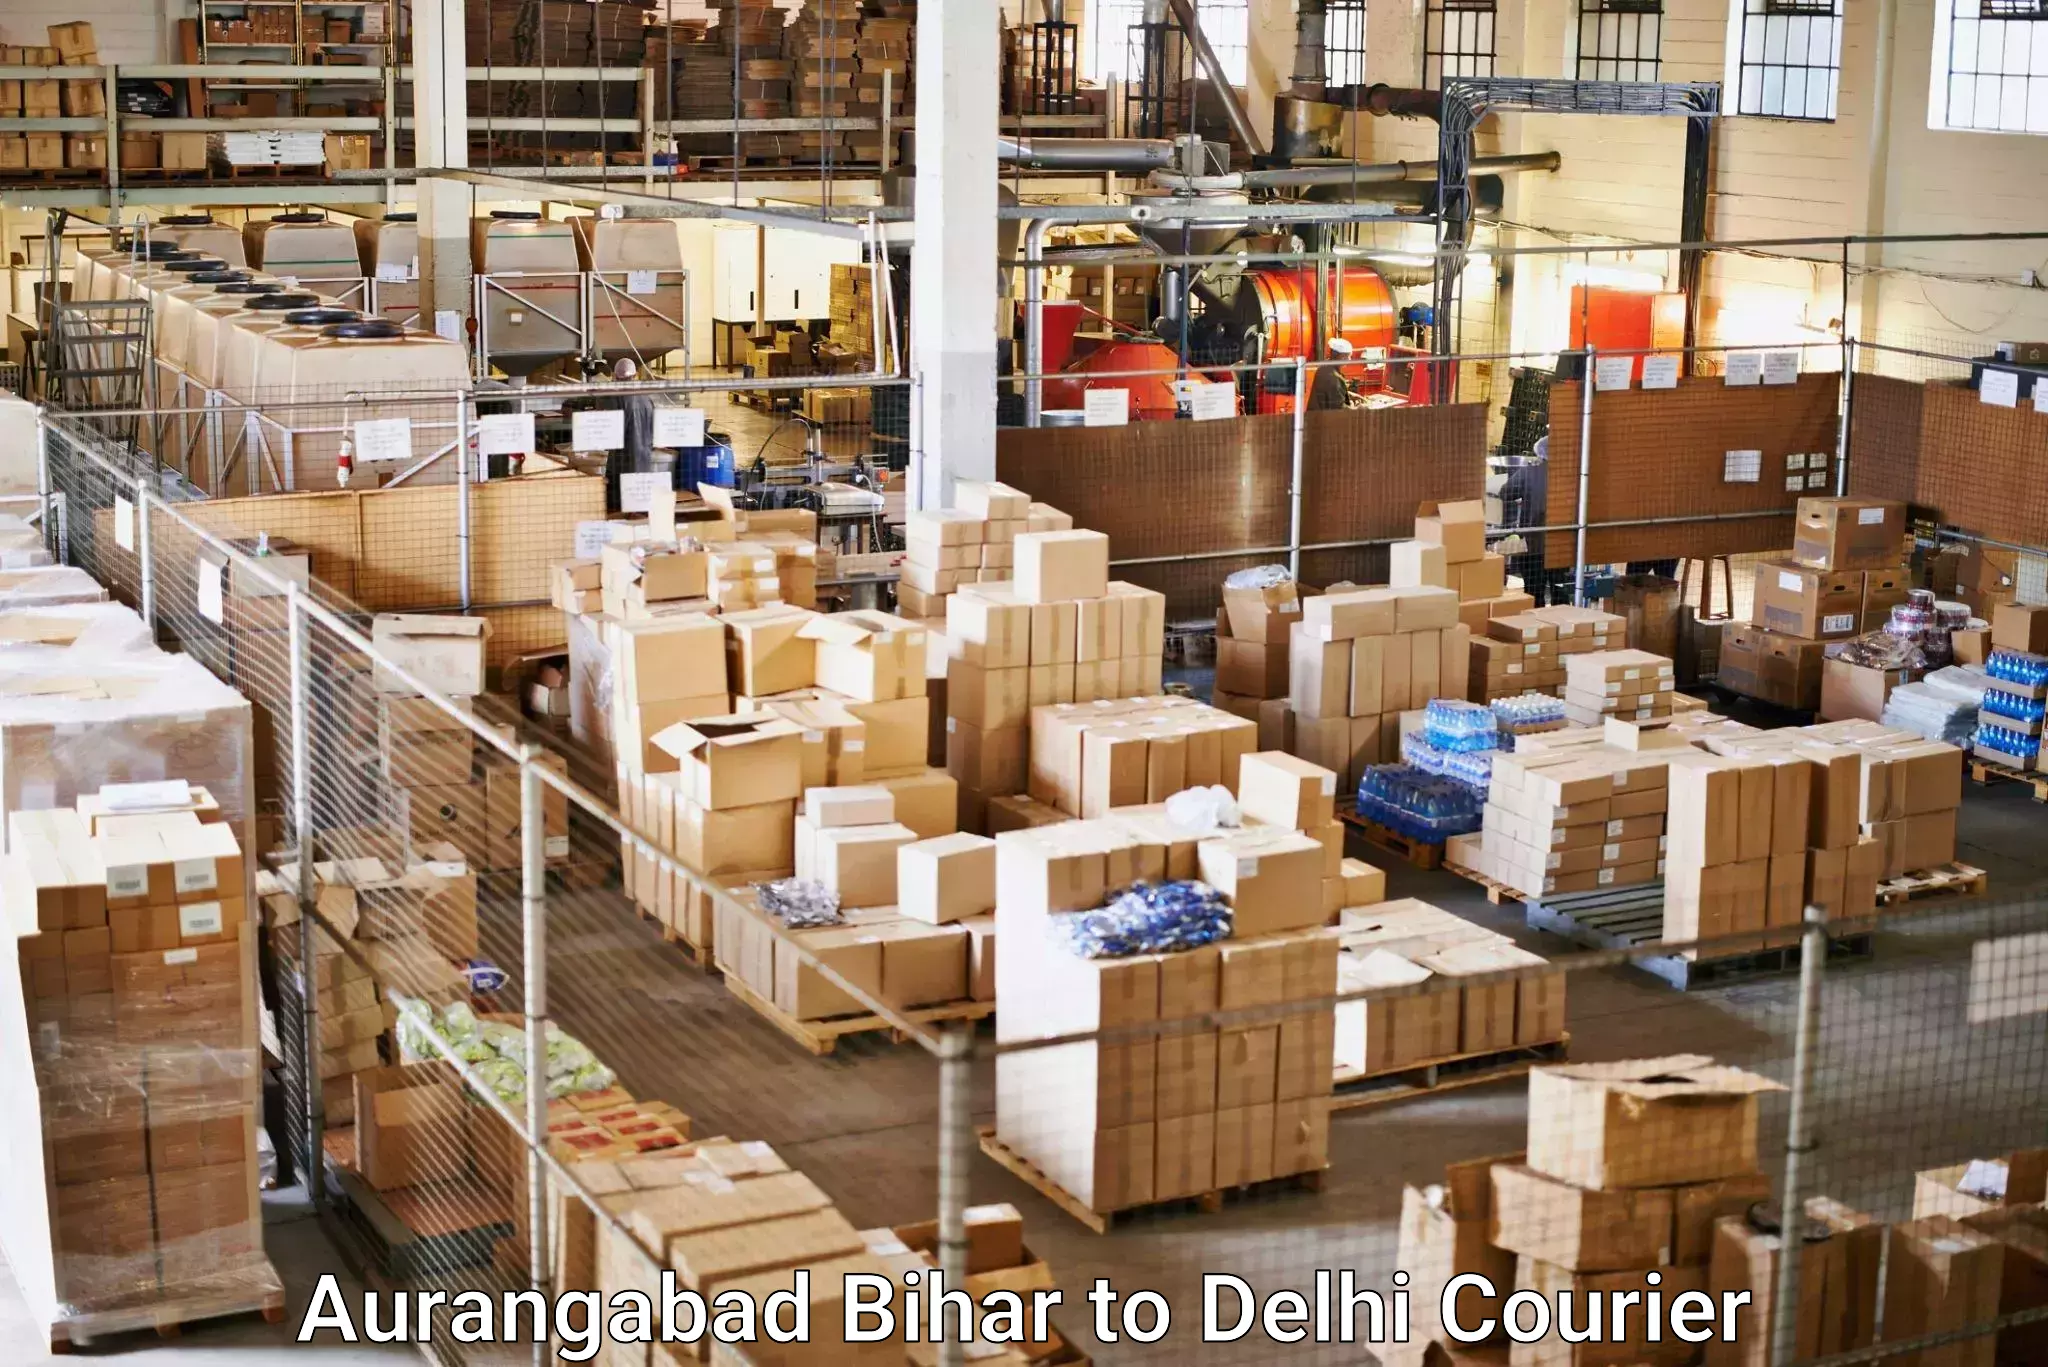 User-friendly delivery service Aurangabad Bihar to IIT Delhi